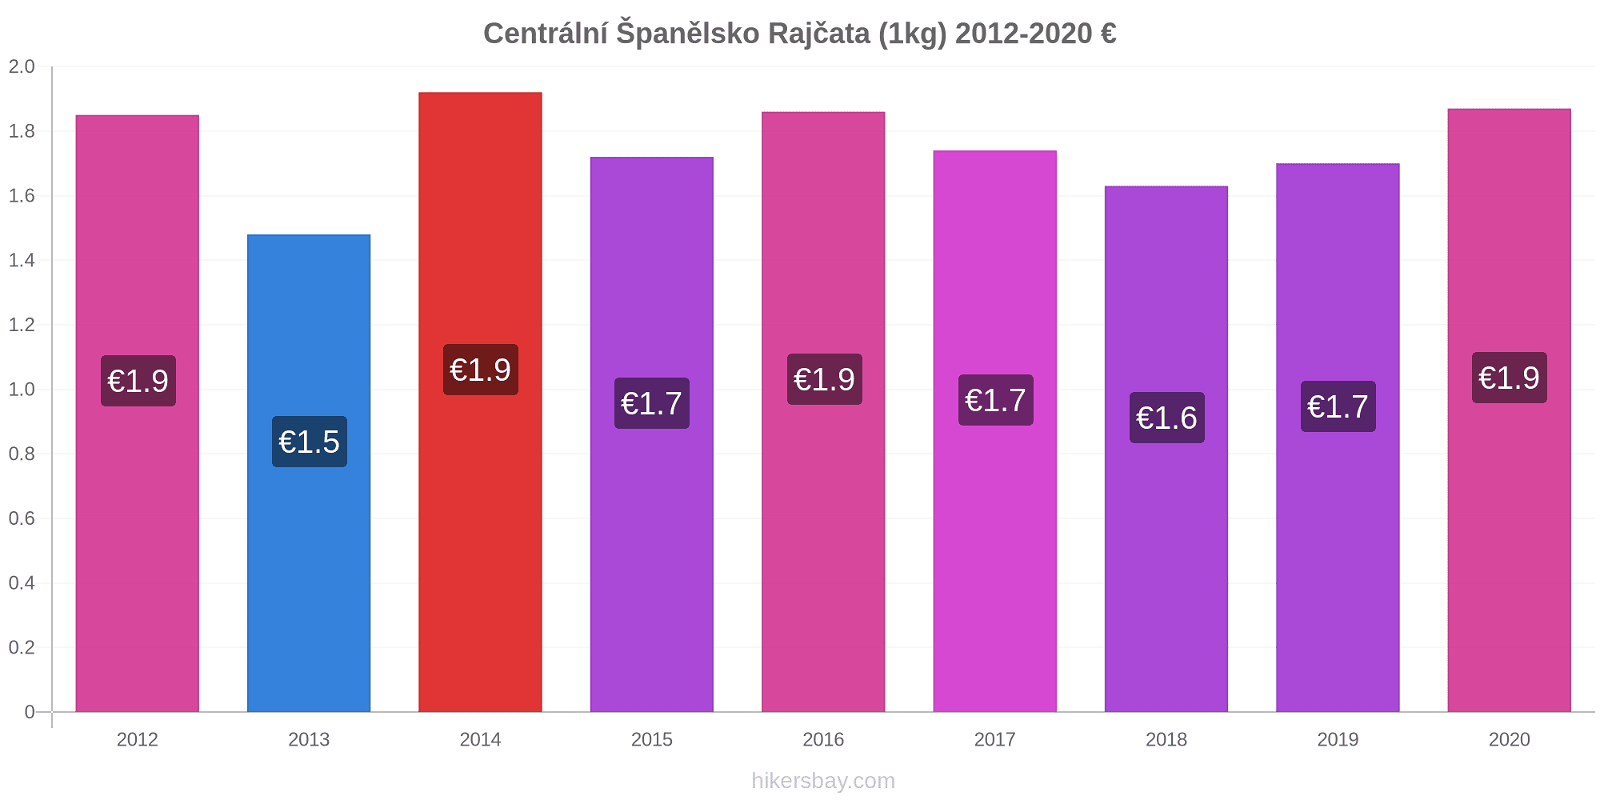 Centrální Španělsko změny cen Rajčata (1kg) hikersbay.com